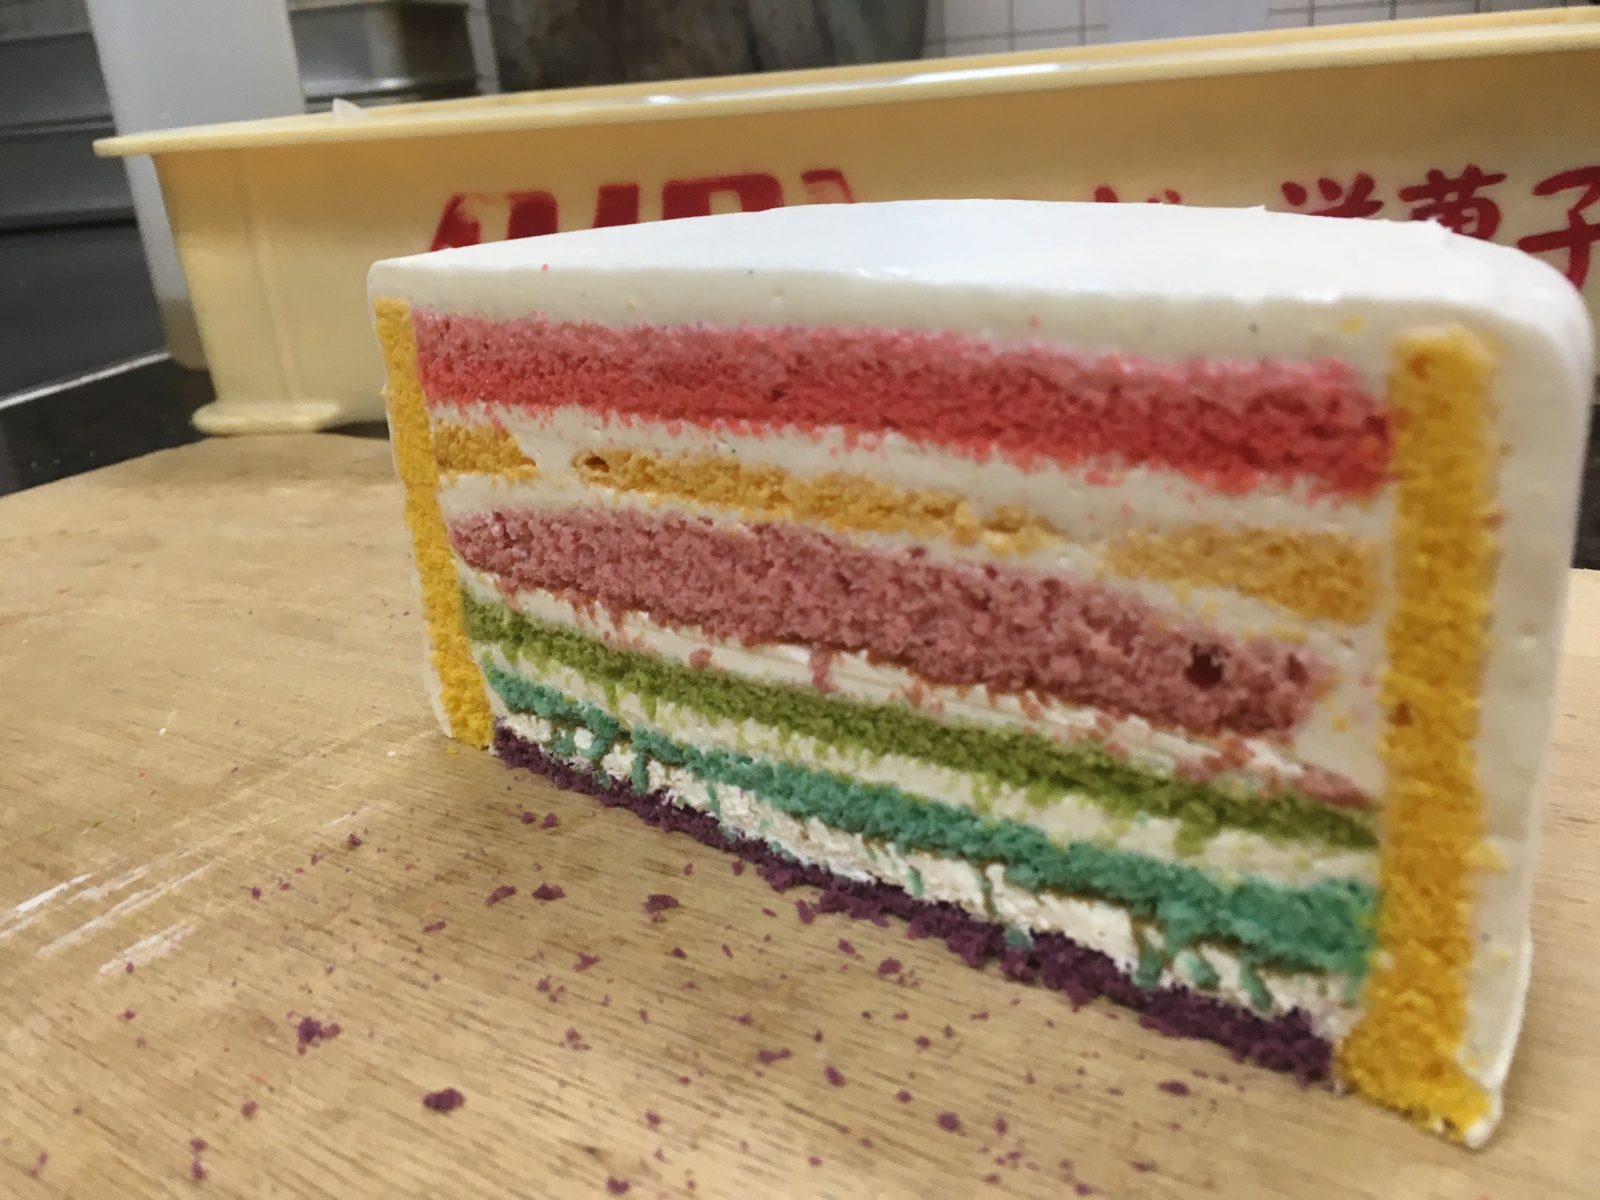 ６号サイズ 1８ｃｍ Sale 虹色ケーキでスポンジが全て違う味です今回見た目にもインスタ映えするようにしました マンゴースポンジがサイドに張りつけてあります スペシャルレインボーケーキ6号サイズ 誕生日ケーキ お誕生日ケーキ バースデー ケーキ ホールケーキ ホール